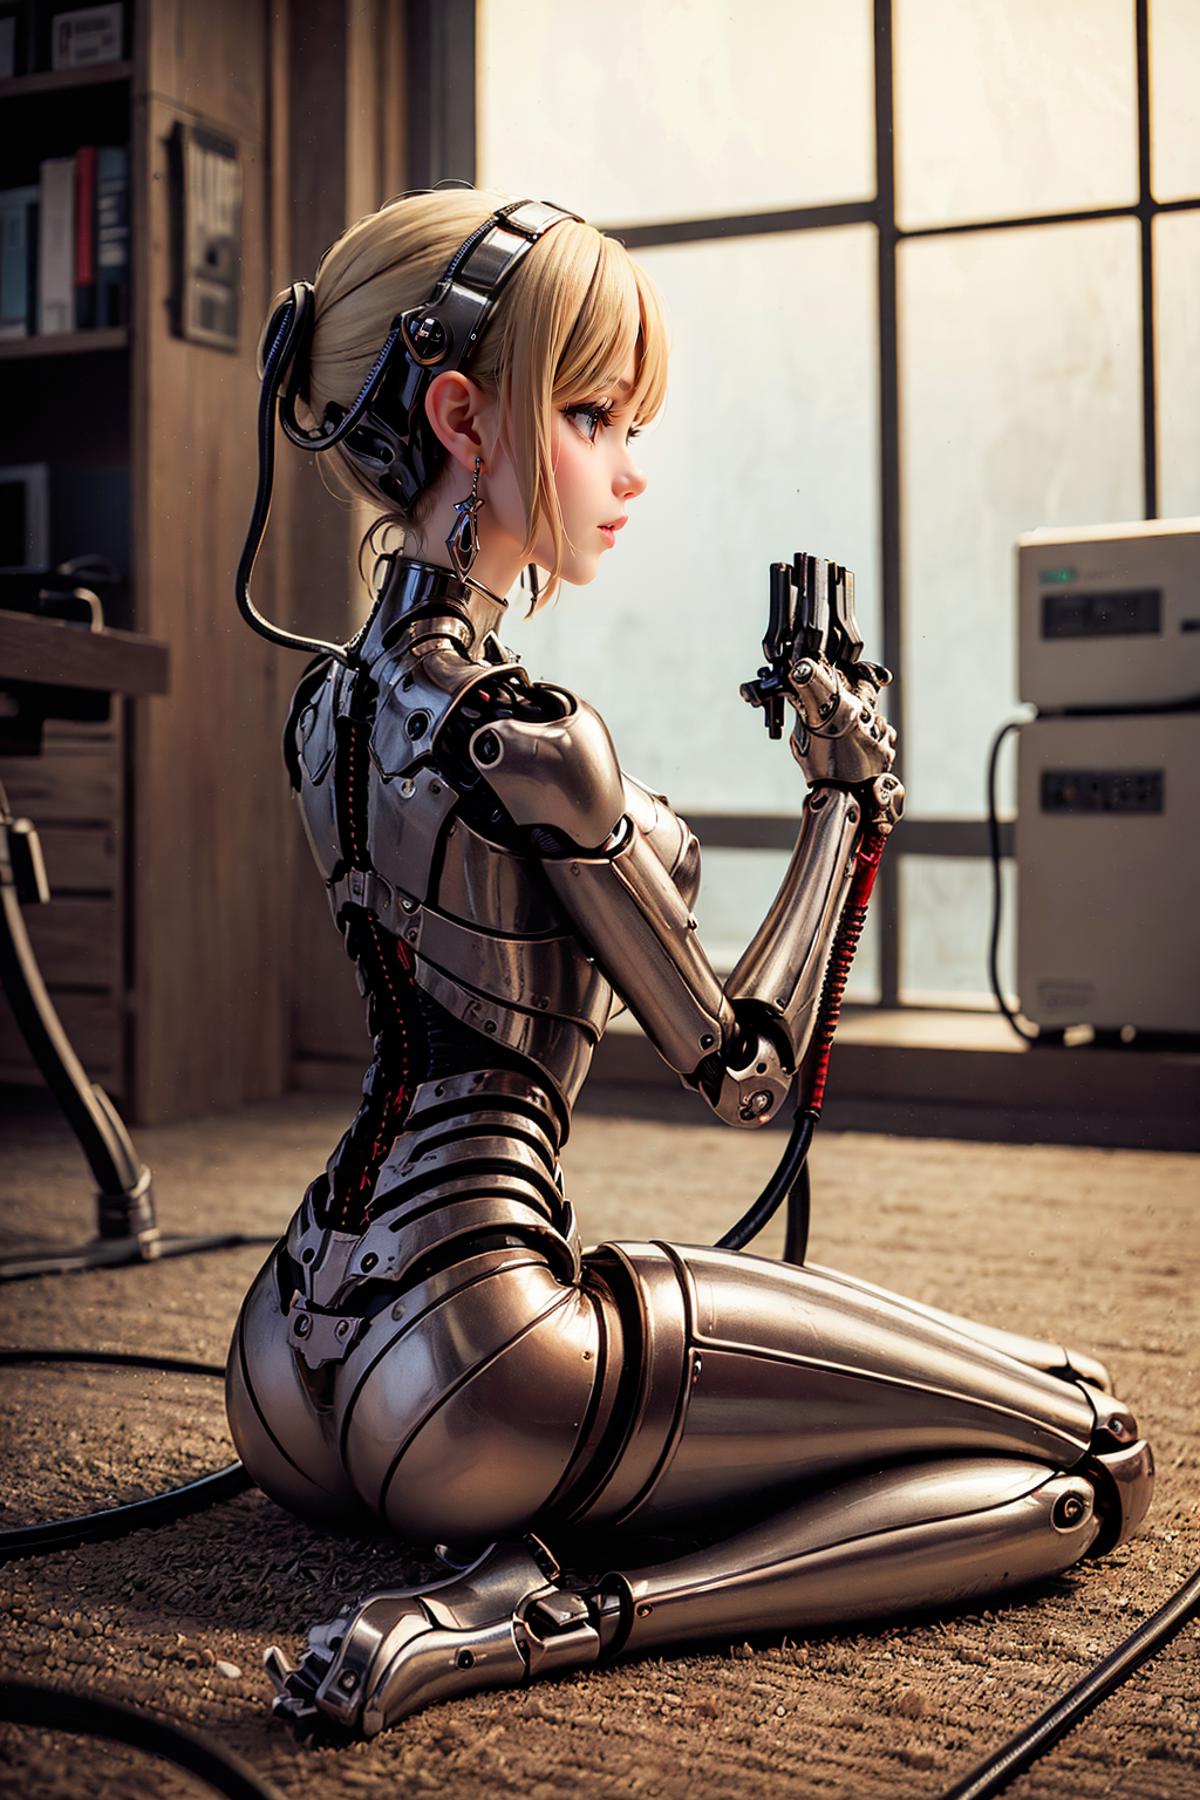 AI model image by Kenji_Zukamu